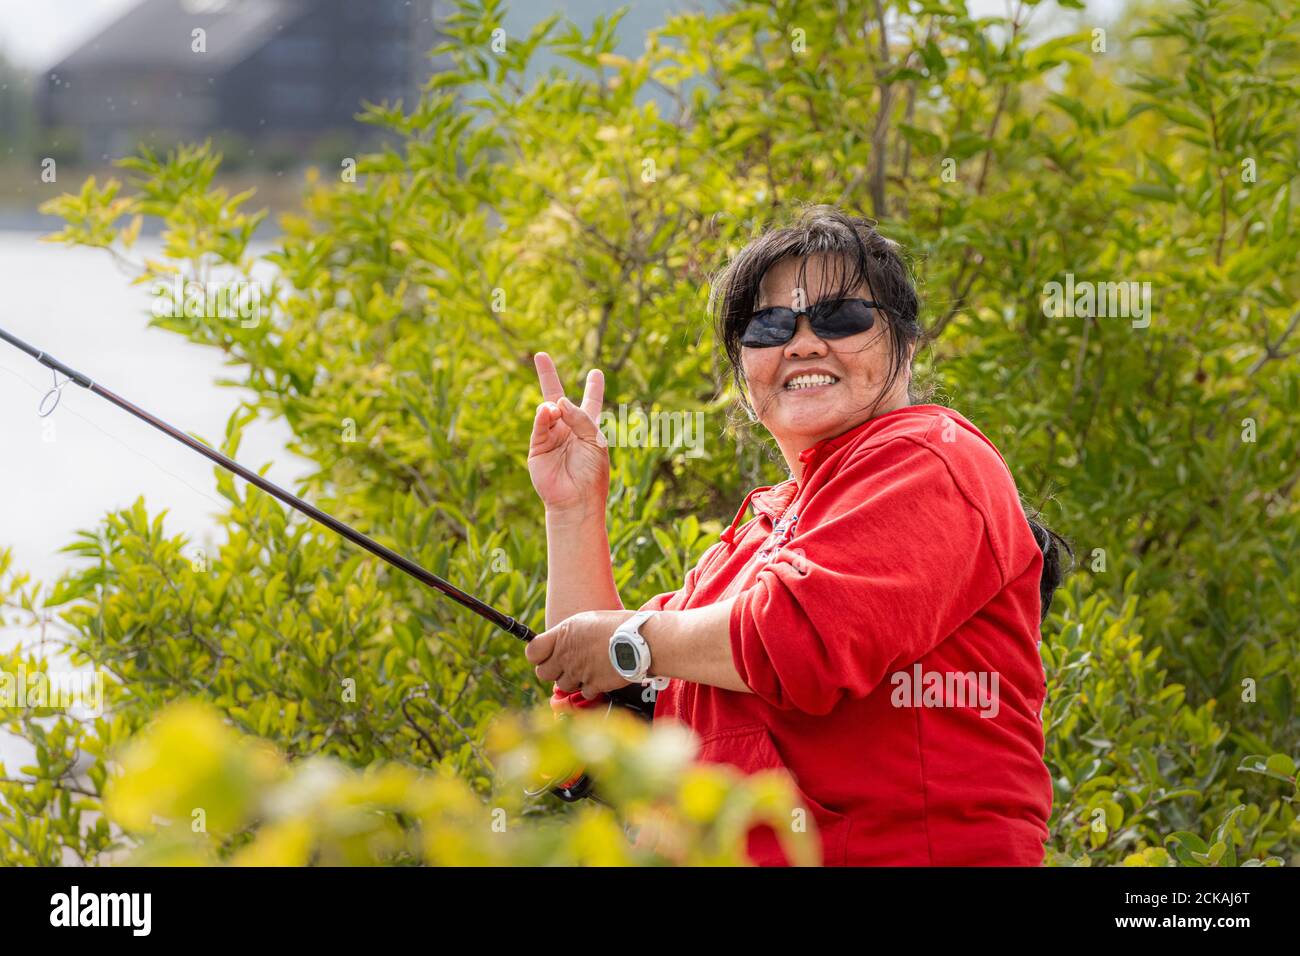 Eine lächelnde asiatische Frau mittleren Alters, in ihren 50ern, hält eine Angelrute und macht ein V-Zeichen. Grüne Büsche im Hintergrund Stockfoto